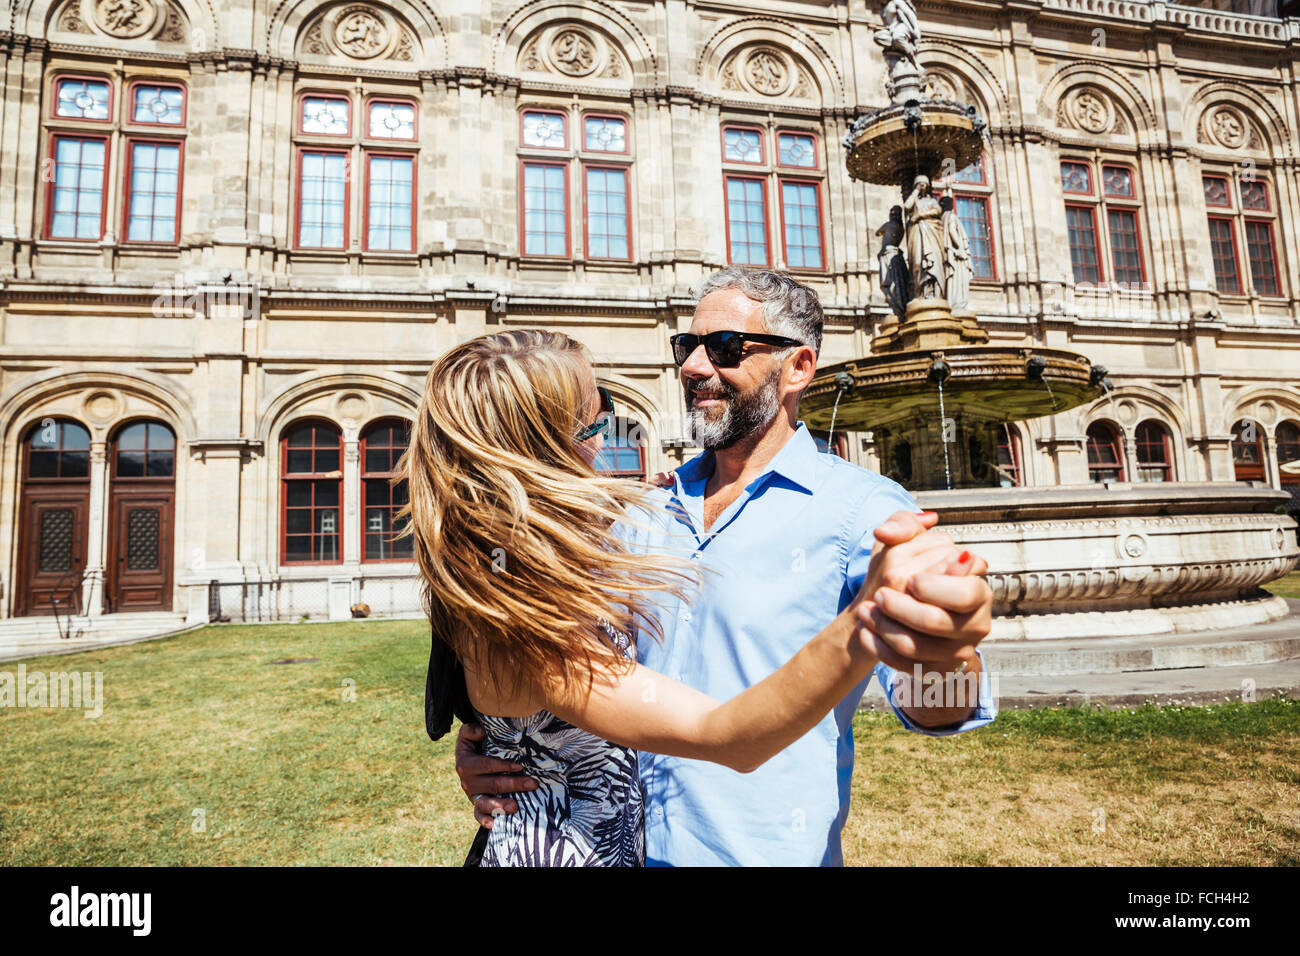 Autriche Vienne smiling couple dancing Viennese waltz en face de l'opéra d'état Banque D'Images